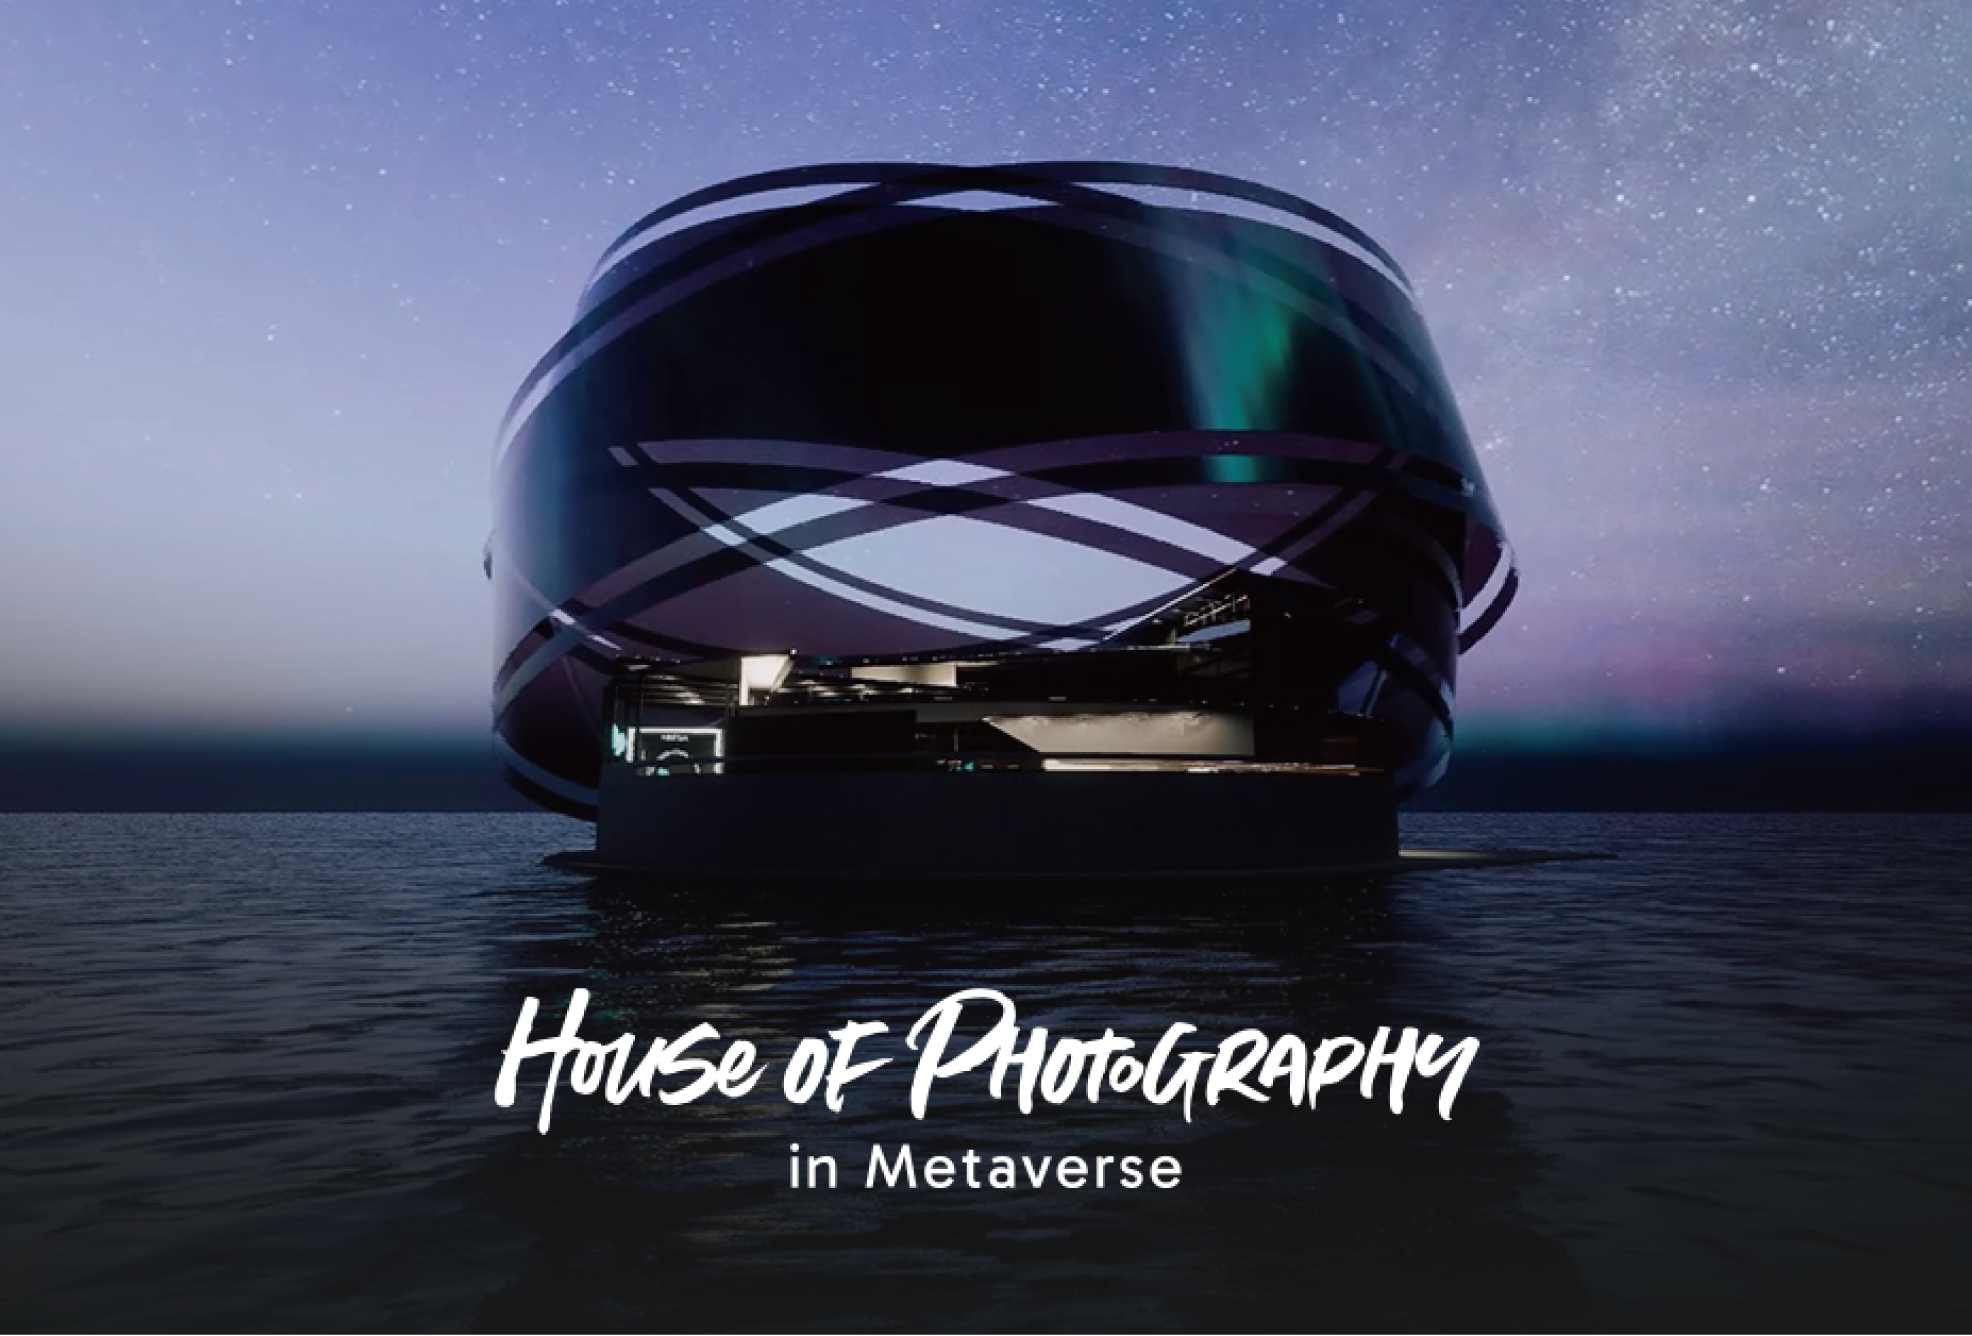 船場、富士フイルム初の写真愛好家向けメタバース「House of Photography in Metaverse」のデザインを担当